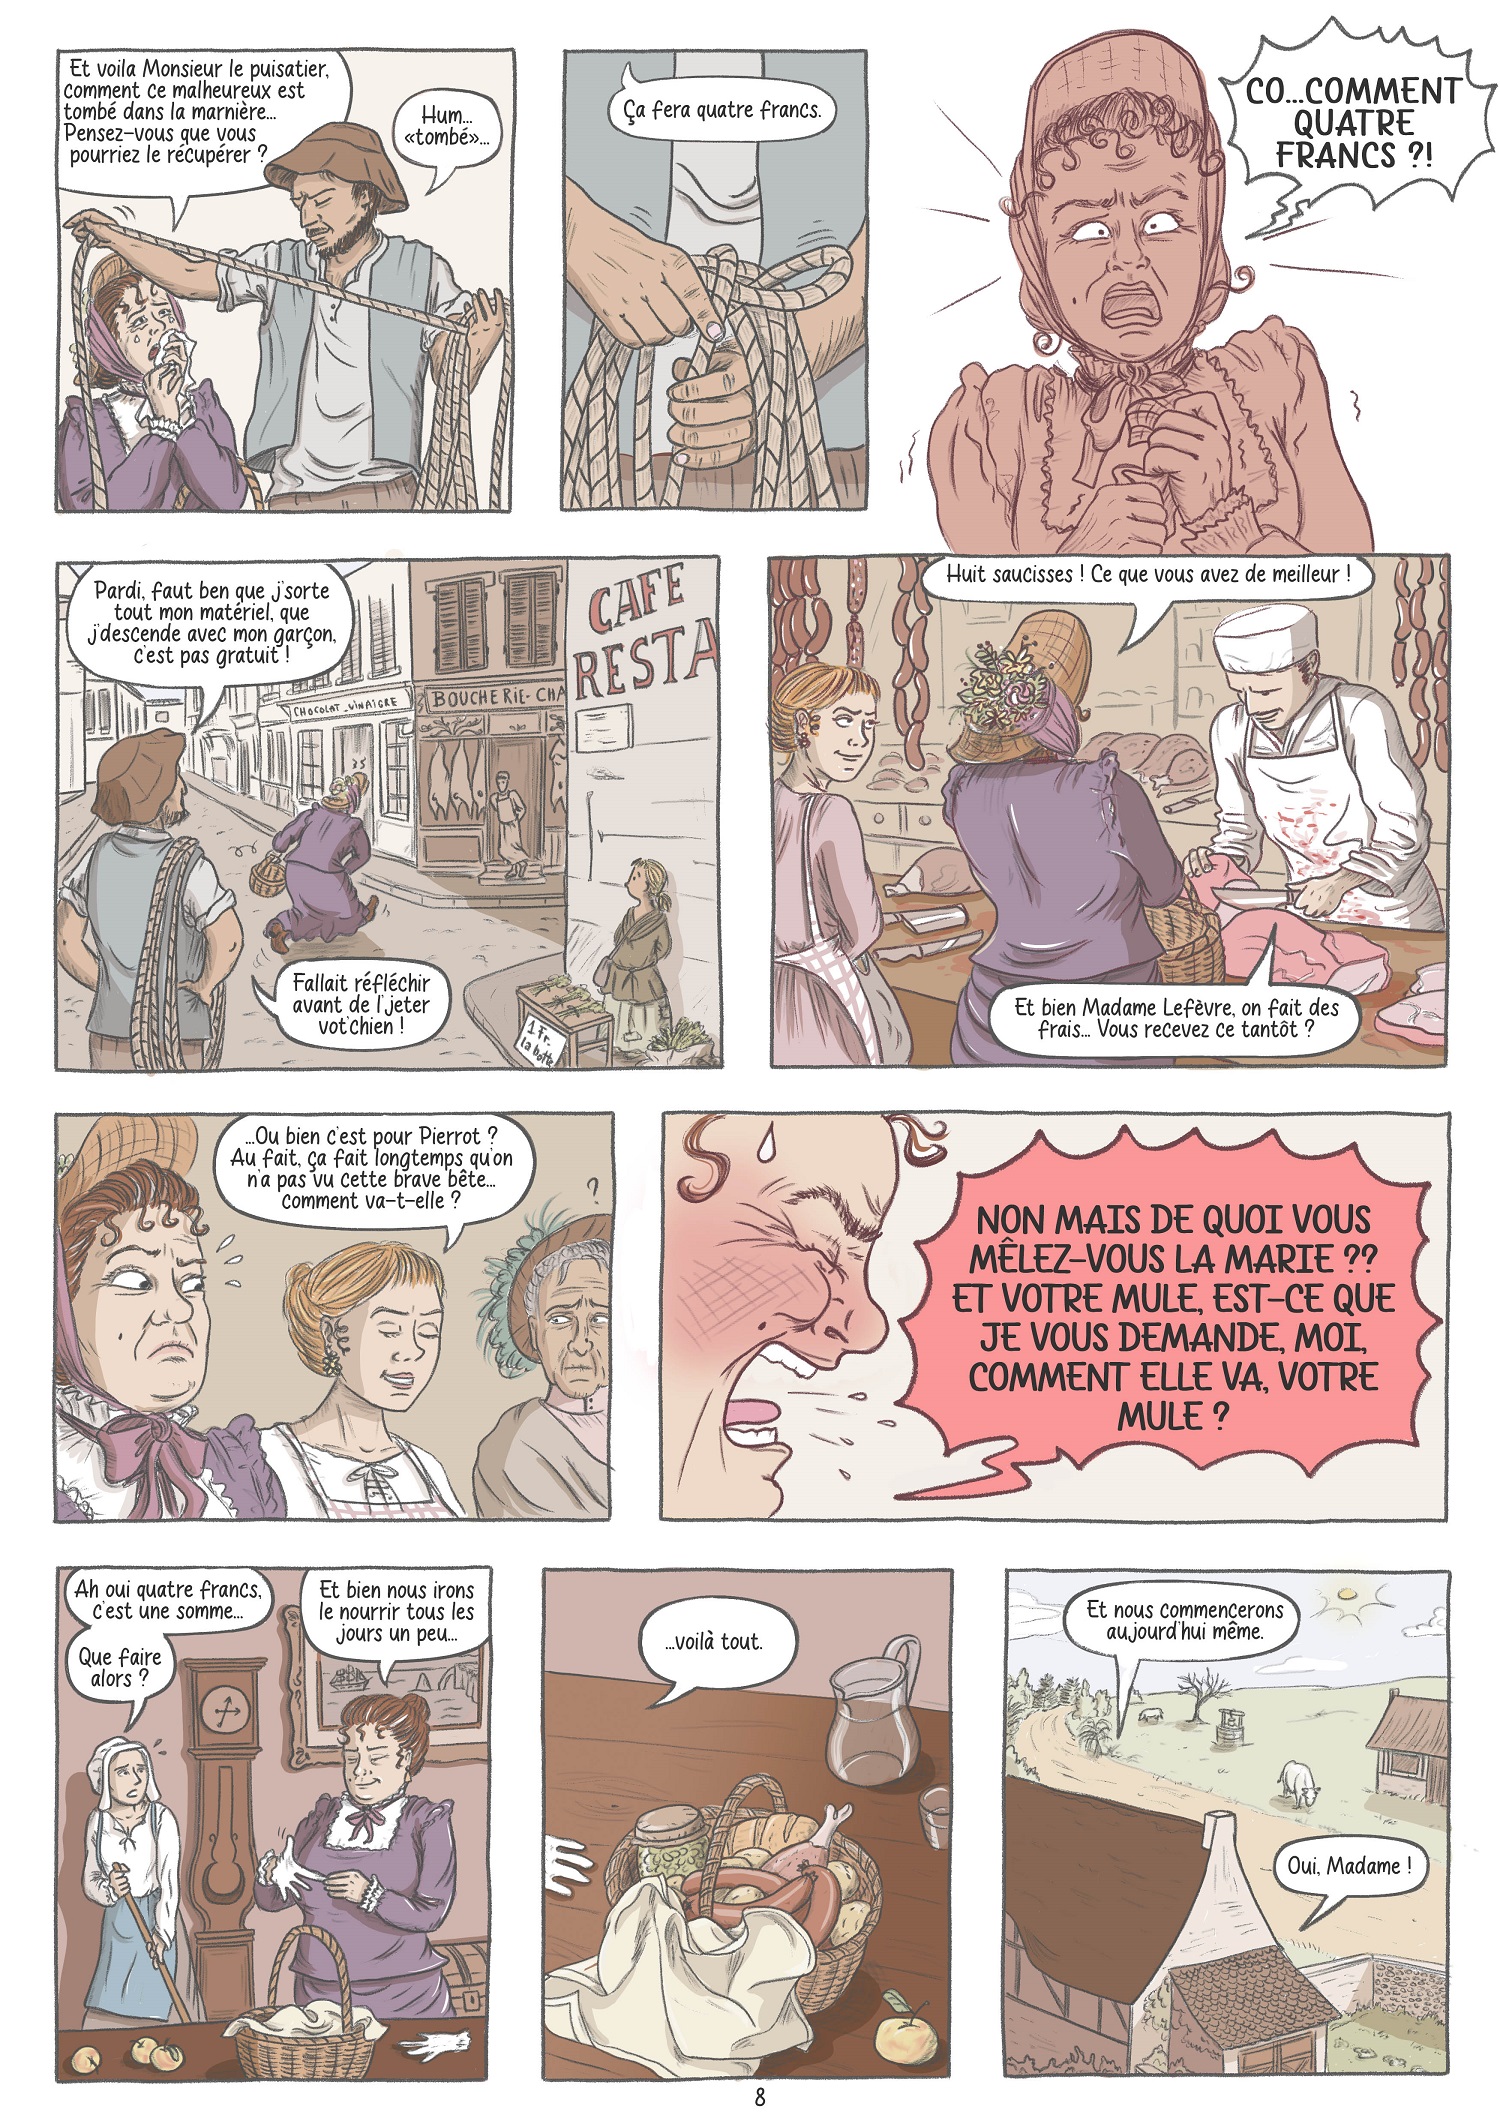 Pierrot Page 8 - Nouvelle de Maupassant